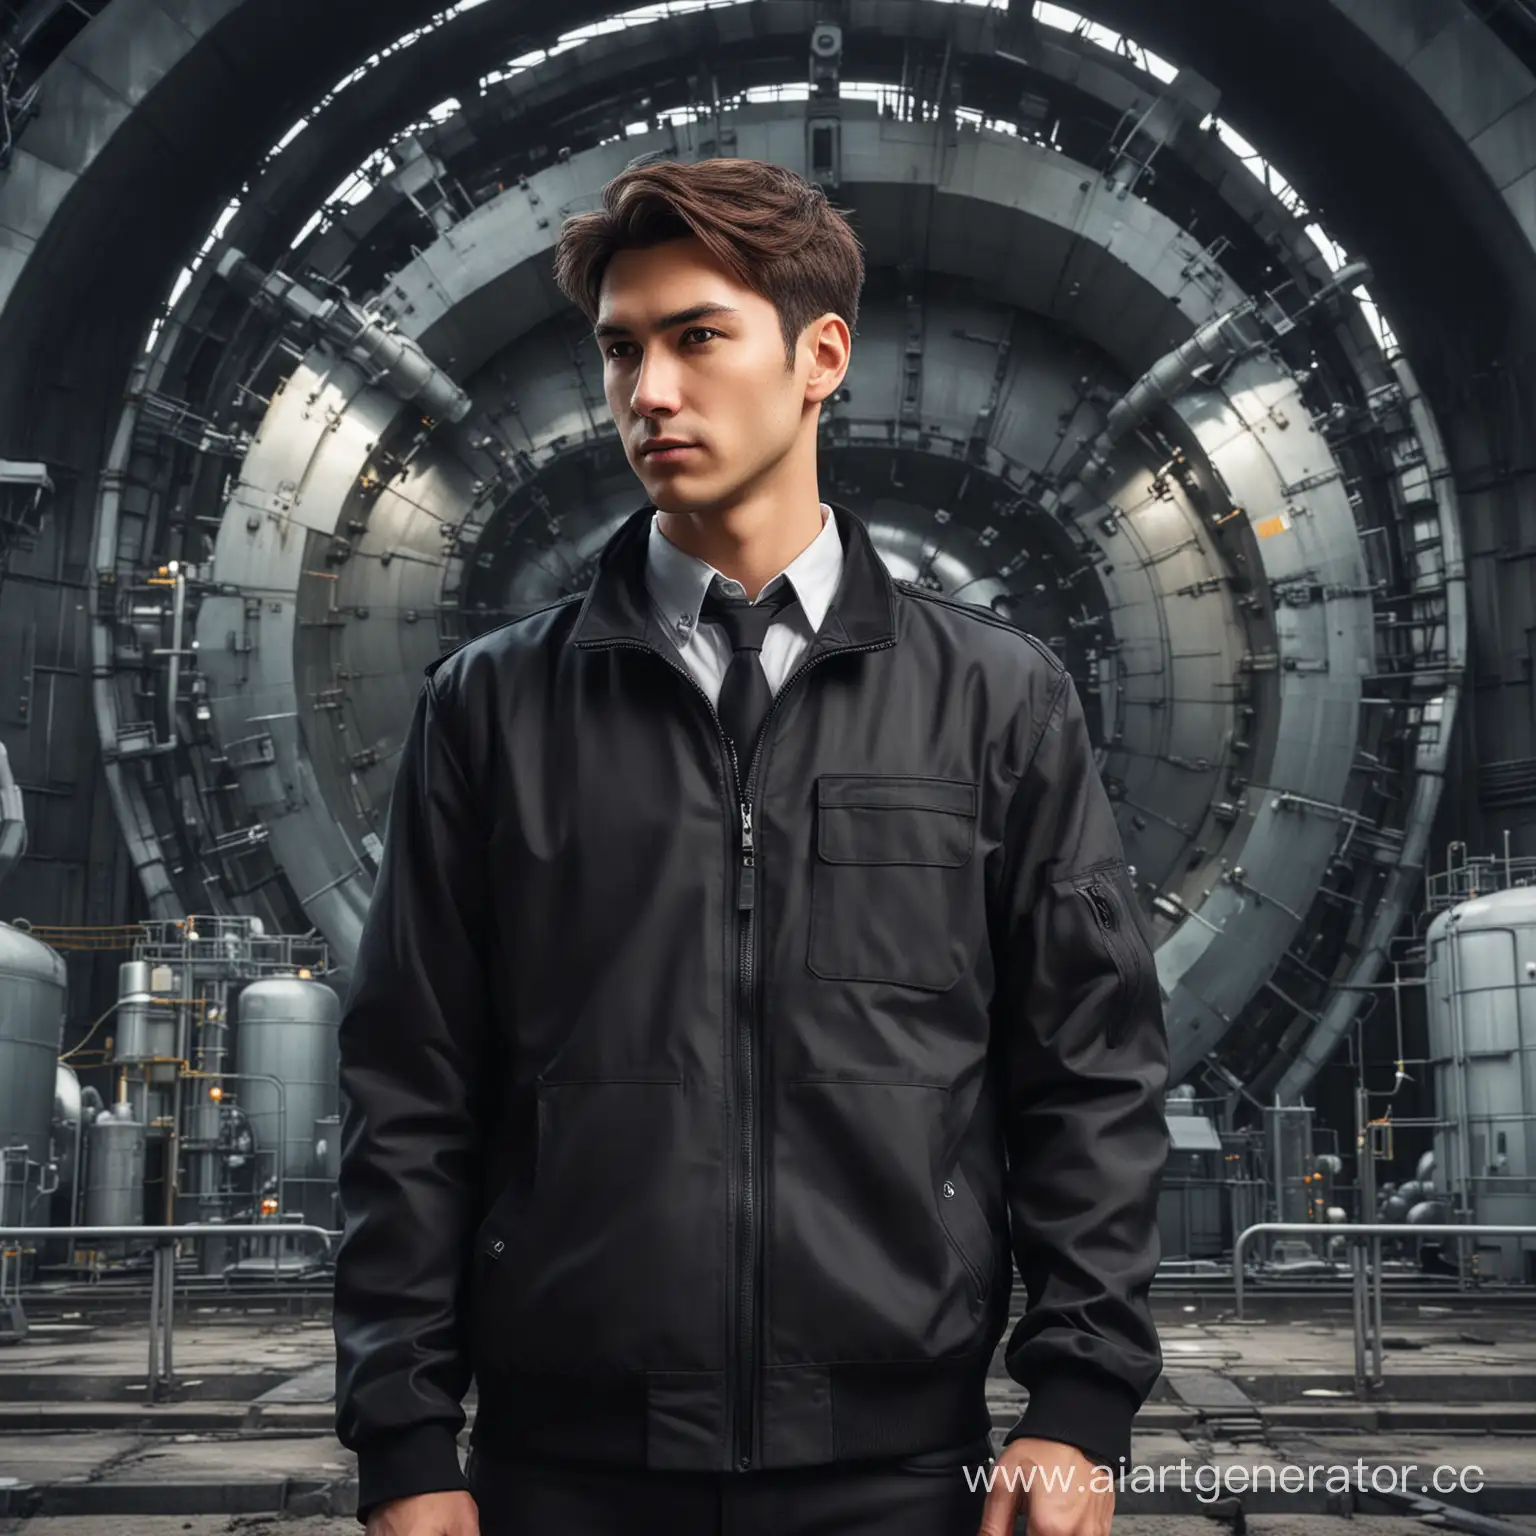 инженер мужчина перед атомным реактором в чёрной куртке , брюнет , в стиле аниме
